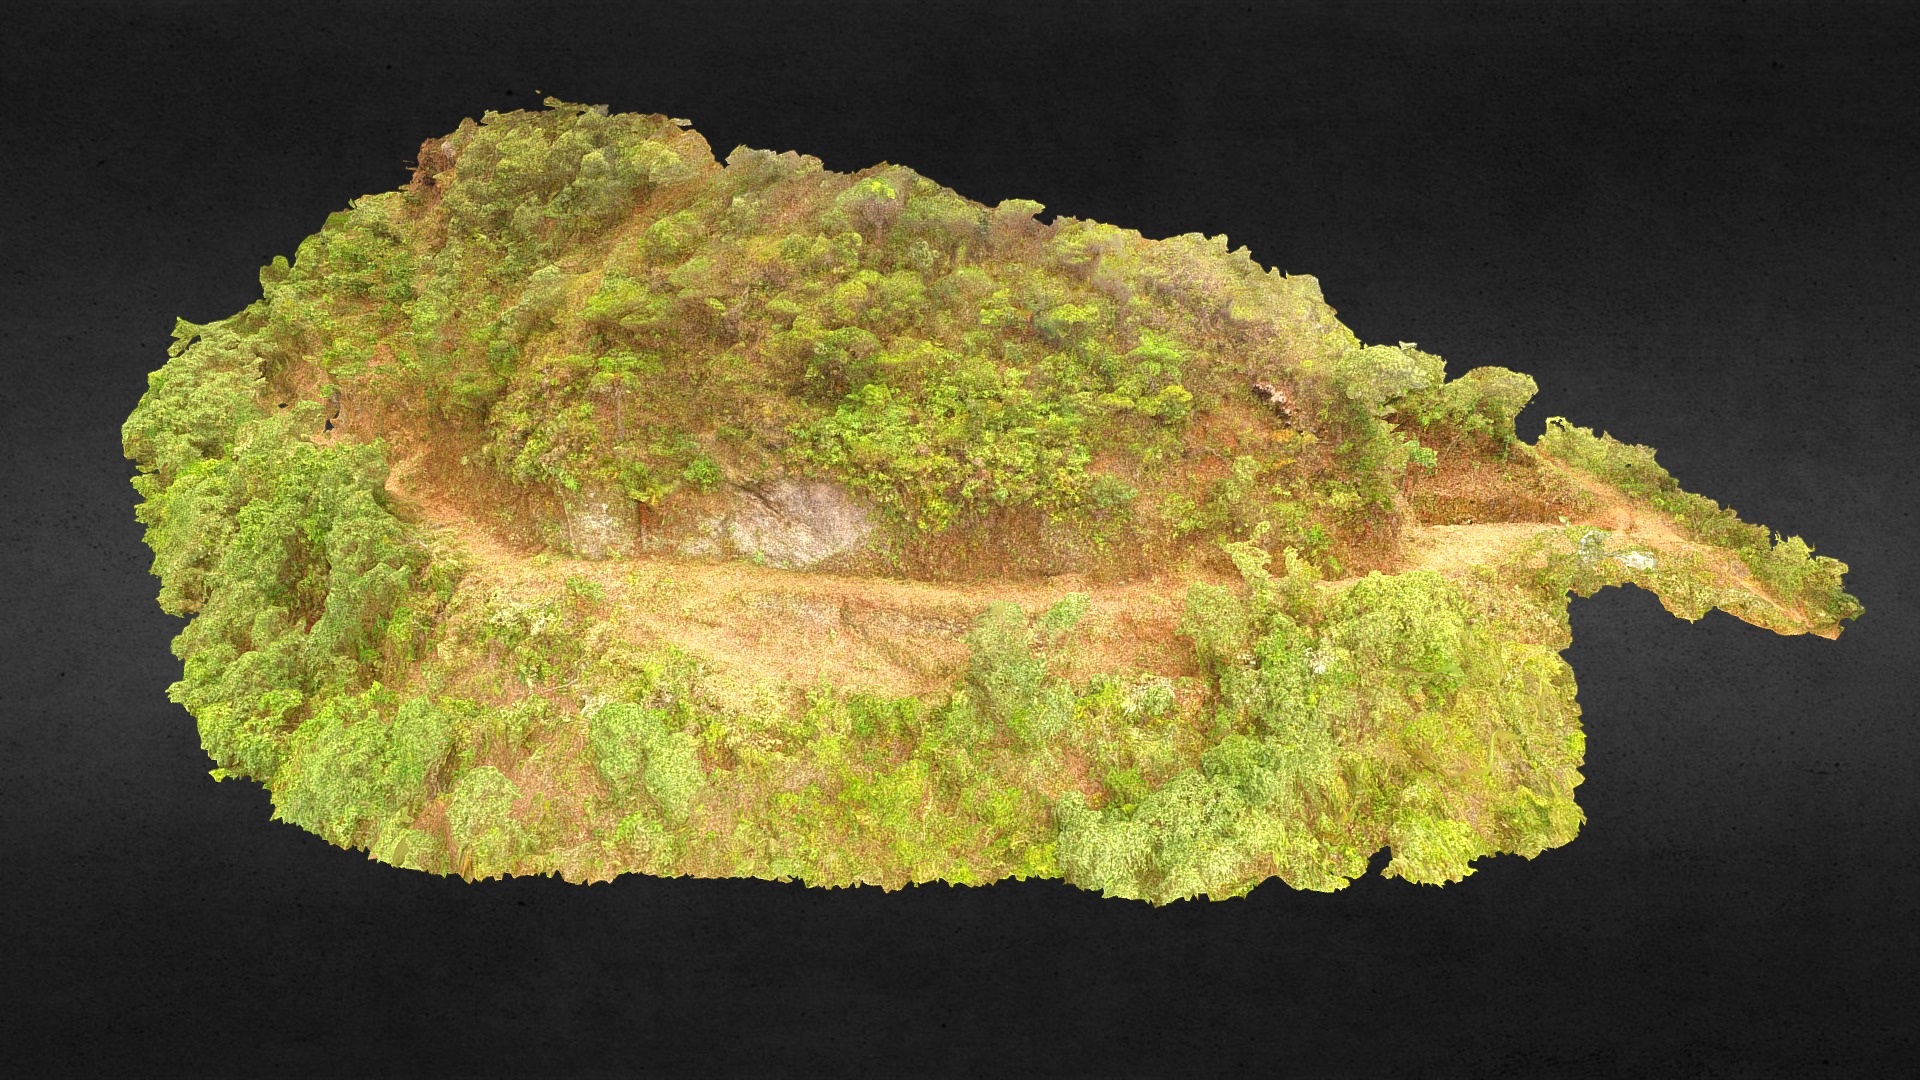 3D model Mina da Barragem e aqueduto - This is a 3D model of the Mina da Barragem e aqueduto. The 3D model is about a green and yellow bush.